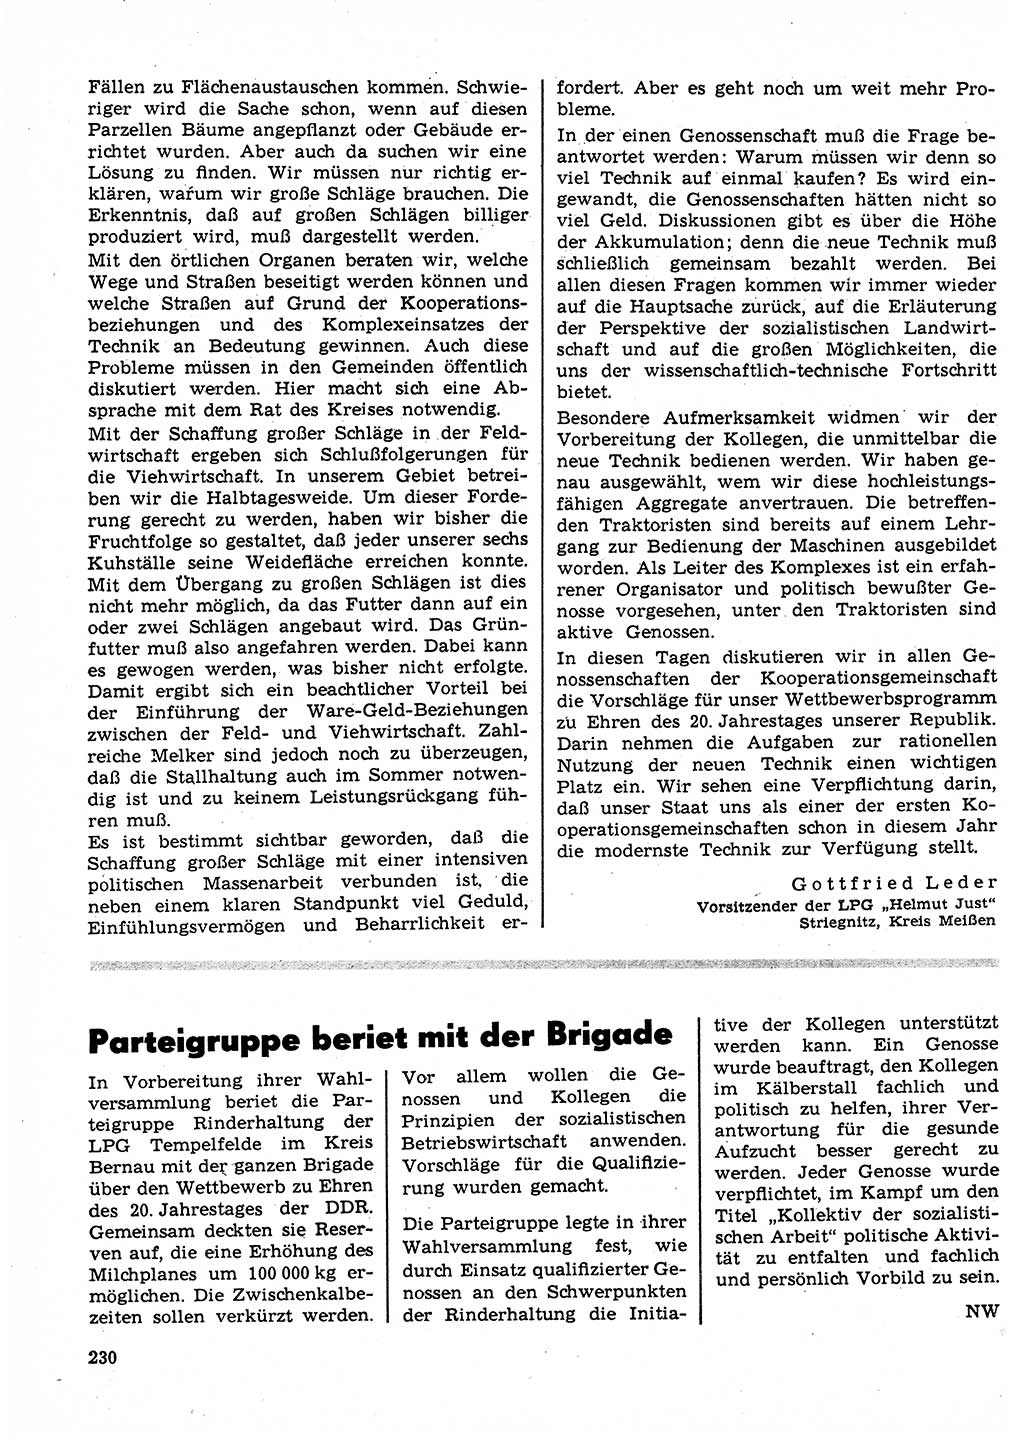 Neuer Weg (NW), Organ des Zentralkomitees (ZK) der SED (Sozialistische Einheitspartei Deutschlands) für Fragen des Parteilebens, 23. Jahrgang [Deutsche Demokratische Republik (DDR)] 1968, Seite 230 (NW ZK SED DDR 1968, S. 230)